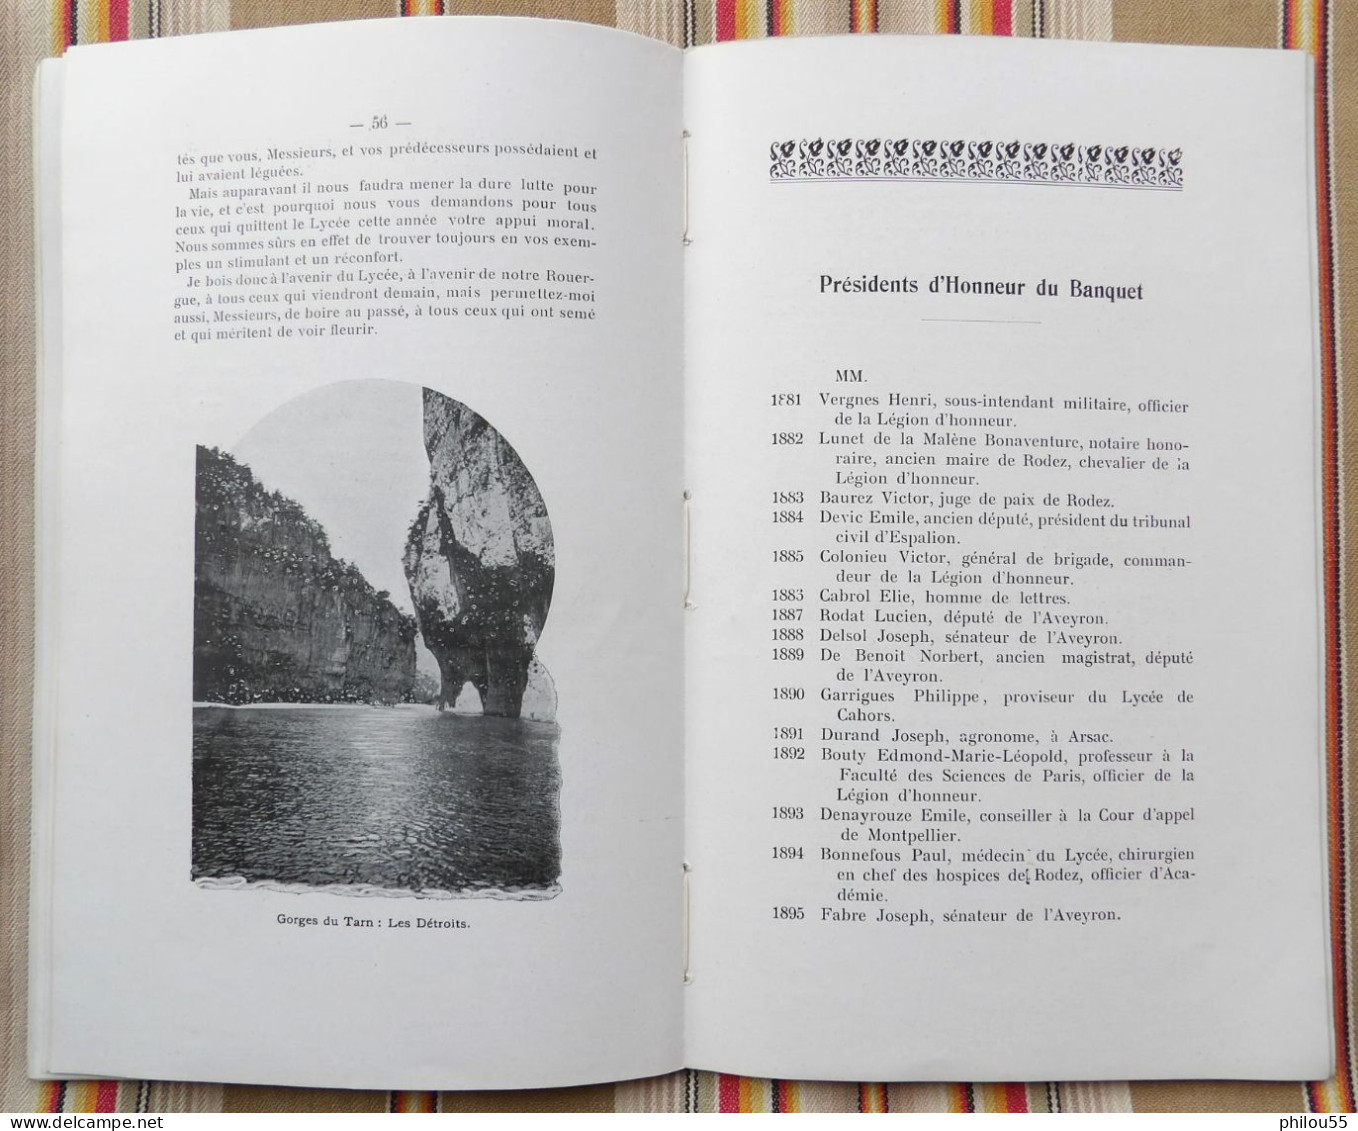 12 RODEZ Annuaire des Anciens Eleves du Lycee de RODEZ 1914